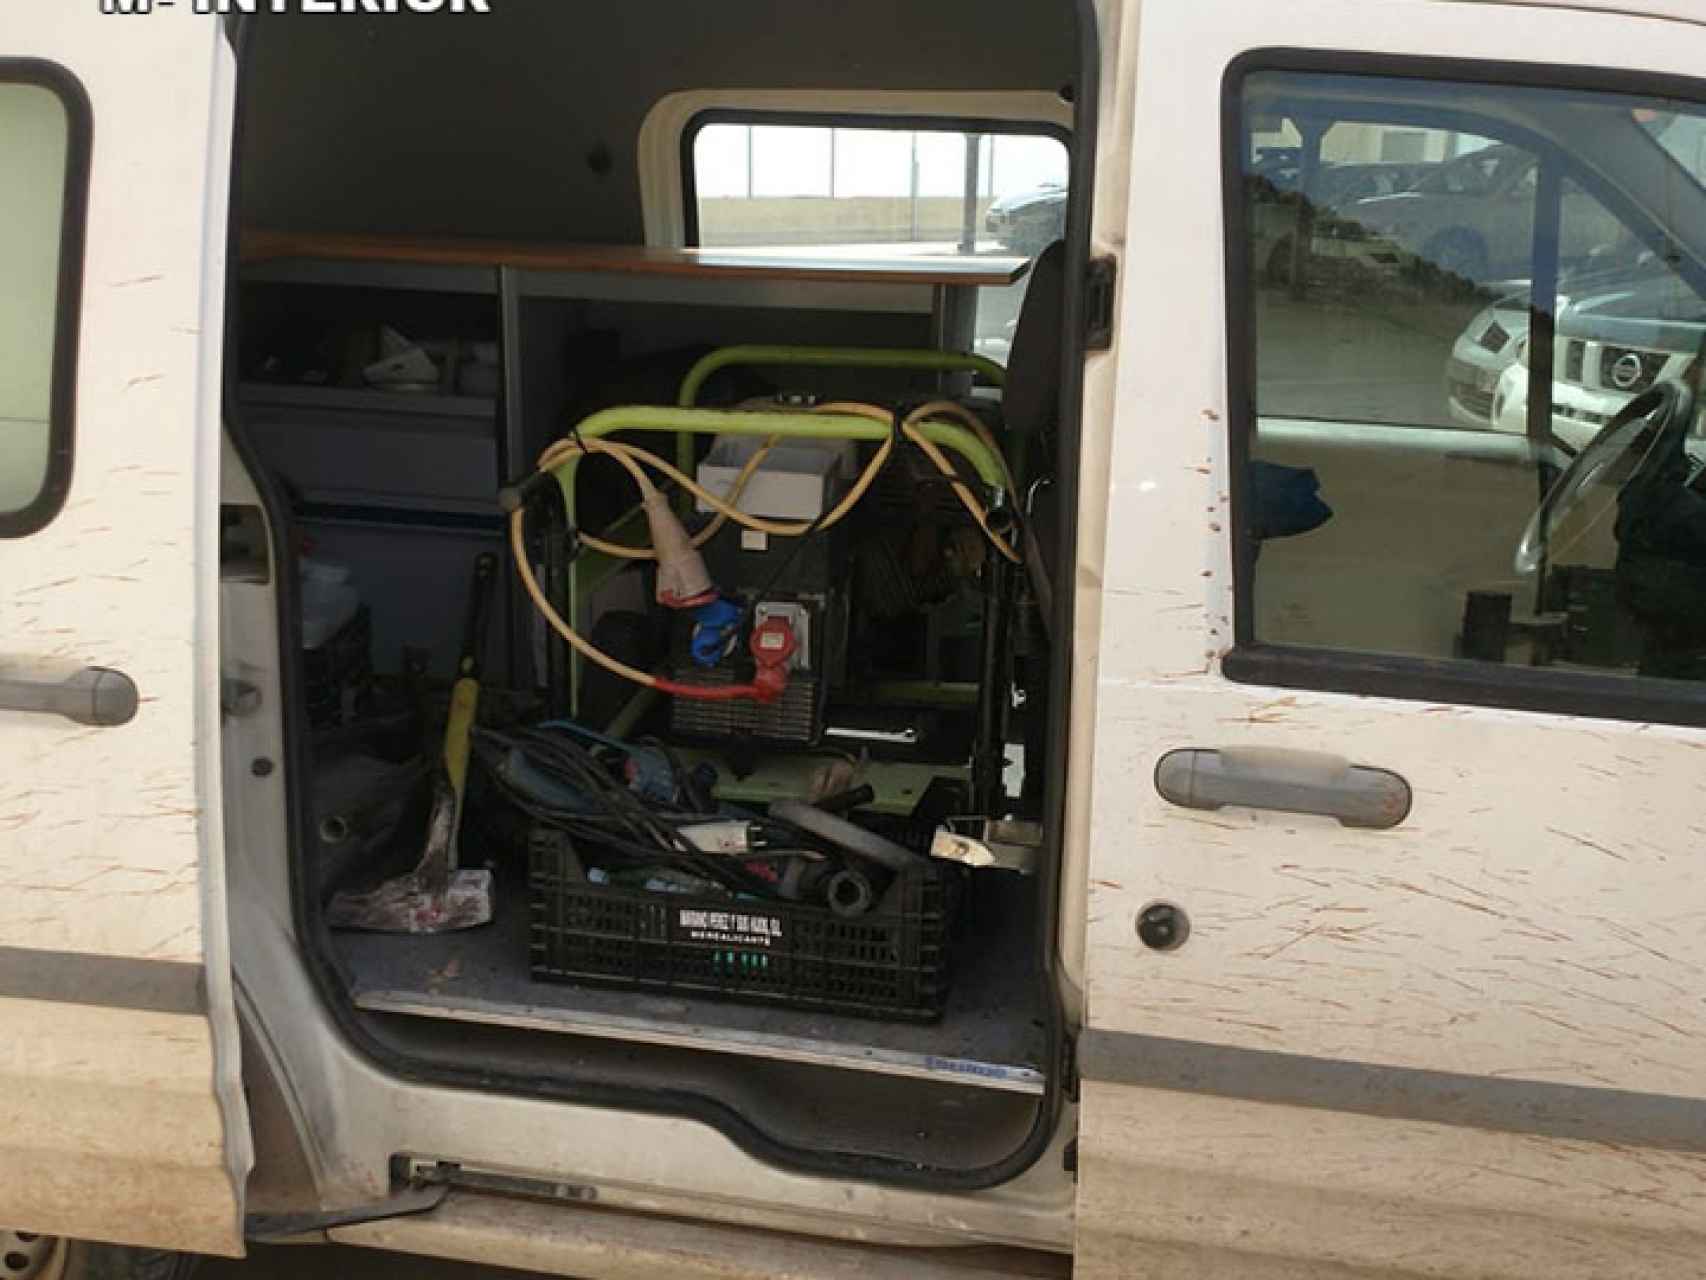 Una desalobradora habilitada en una furgoneta para transportarla por fincas agrícolas.